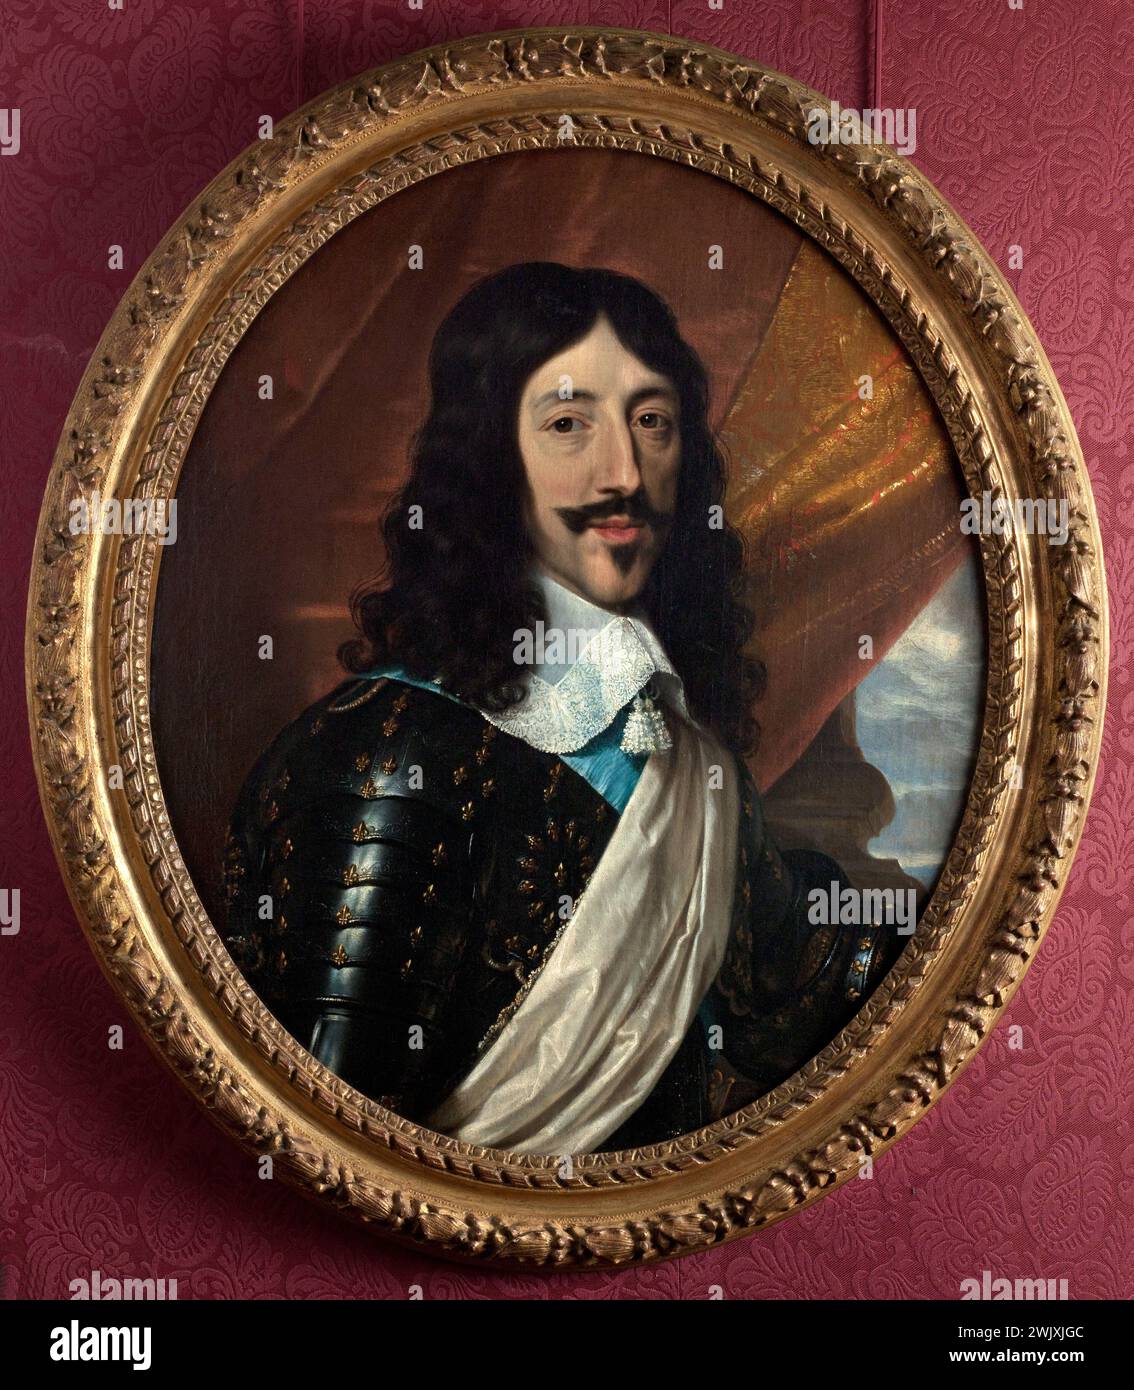 Philippe de Champaigne (1602-1674). 'Louis XIII (1601-1643), king of France'. Oil on canvas. Paris, Carnavalet museum. 71365-1 Armor, bourbon, face, portrait, king France, oil on canvas Stock Photo